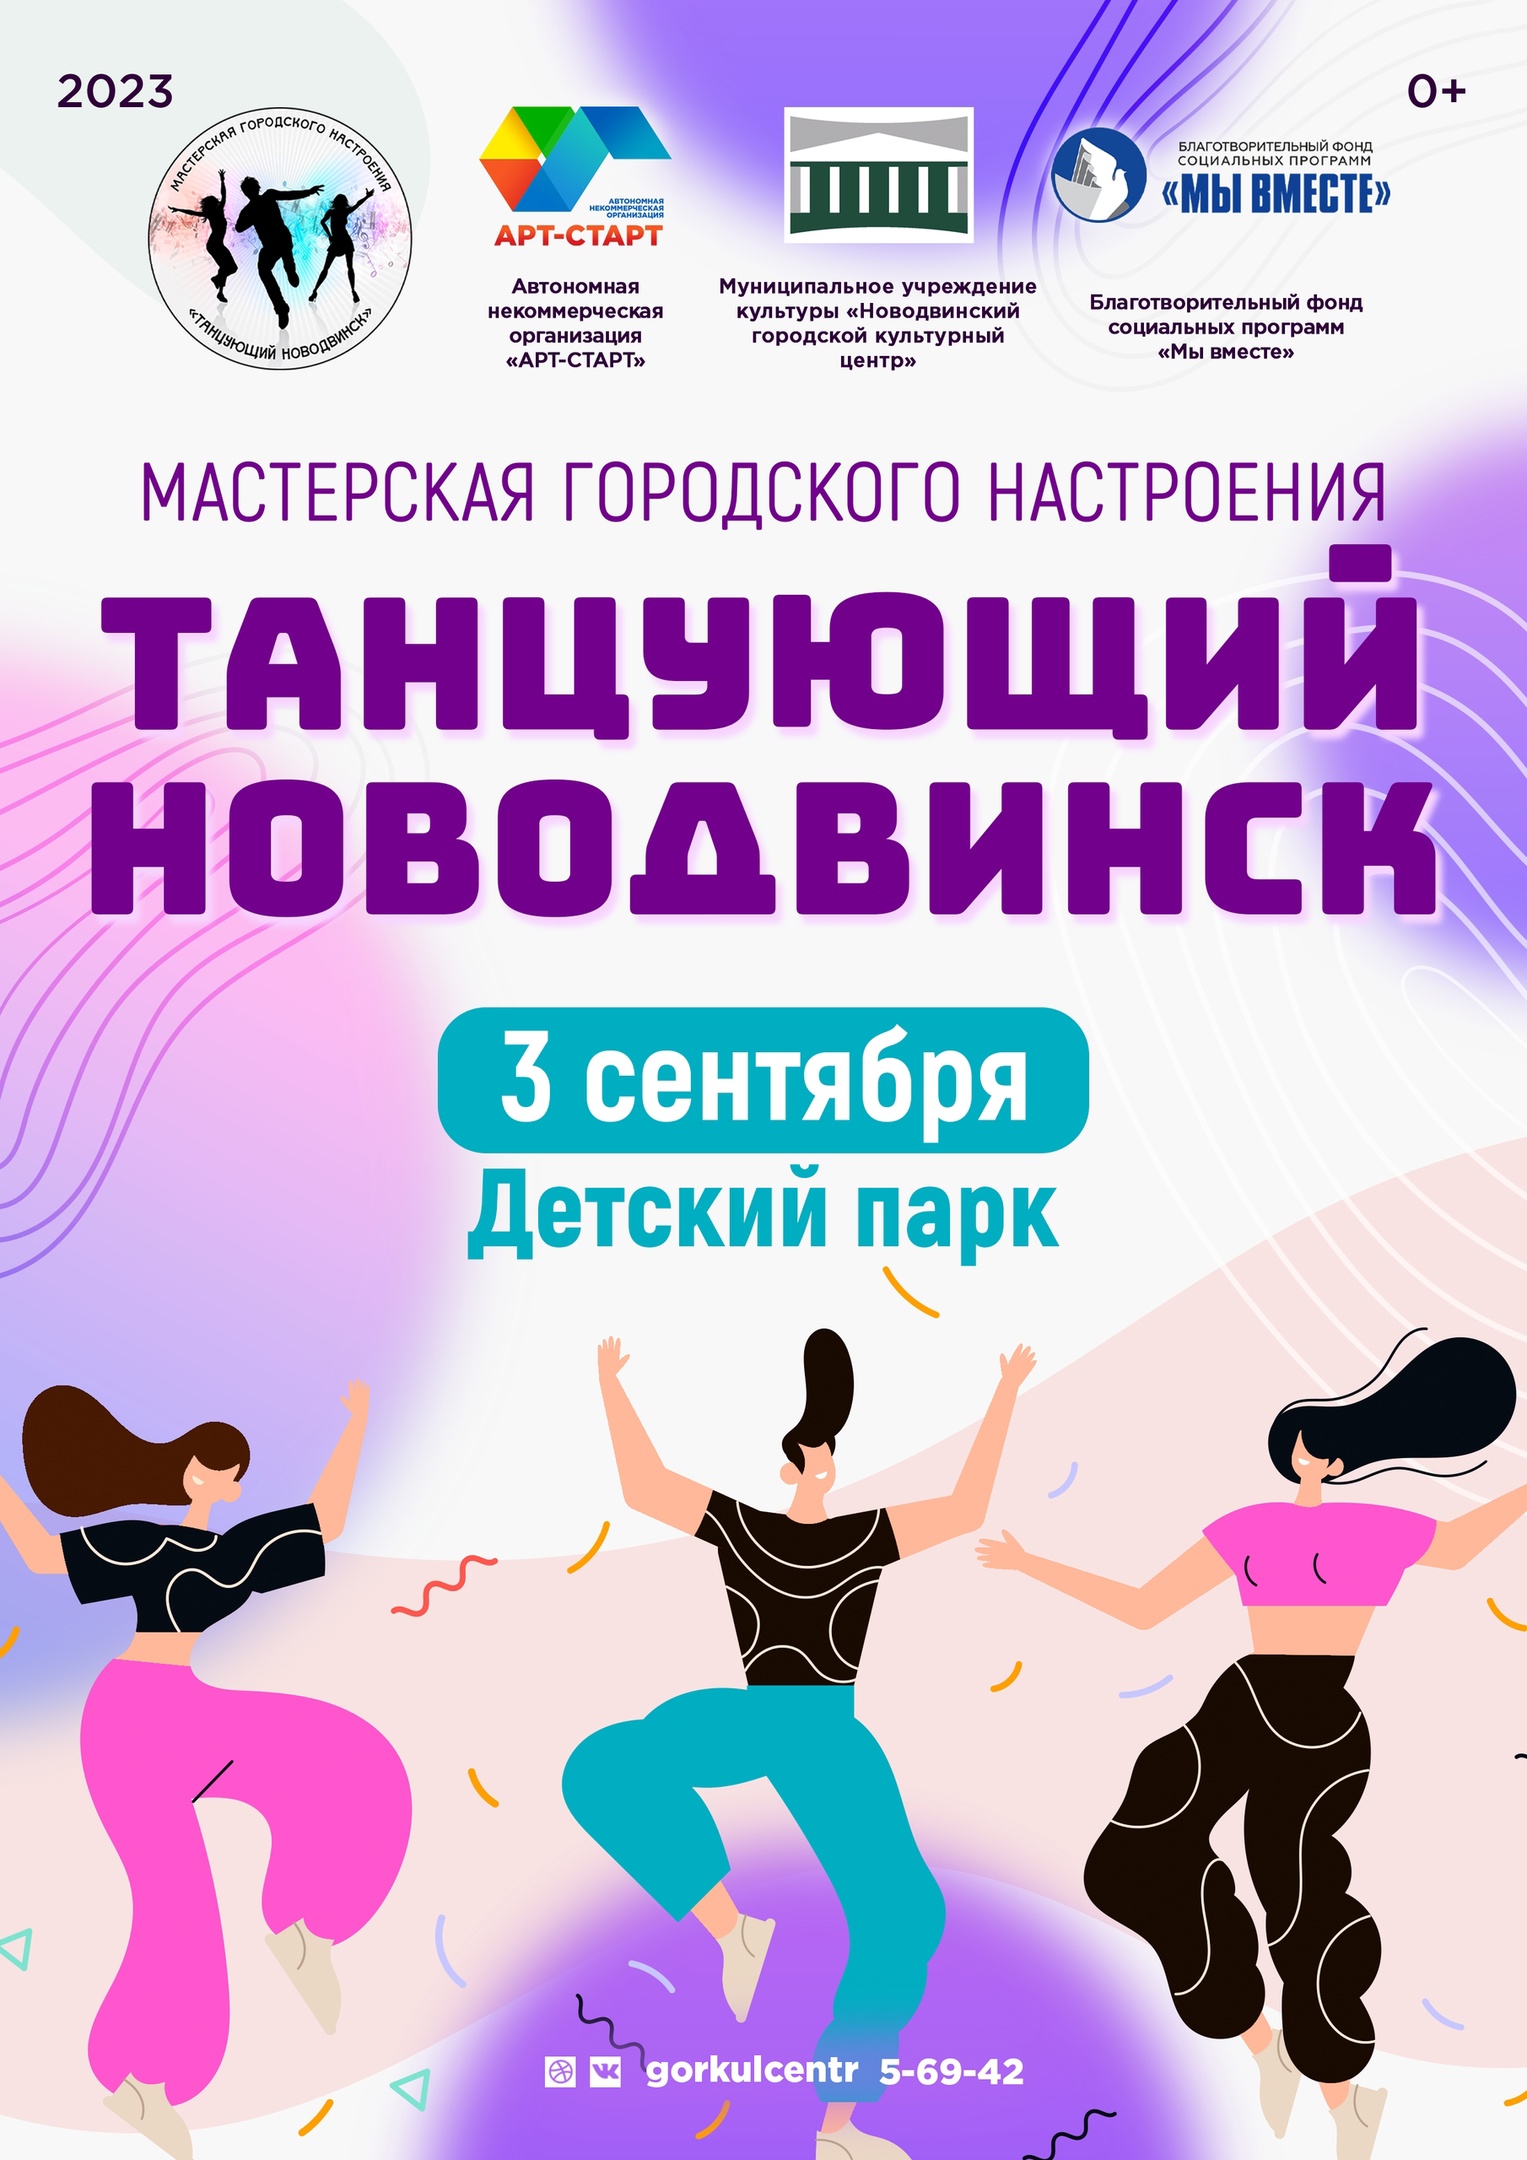 «Танцующий Новодвинск» — вспомним всё, что было этим летом?